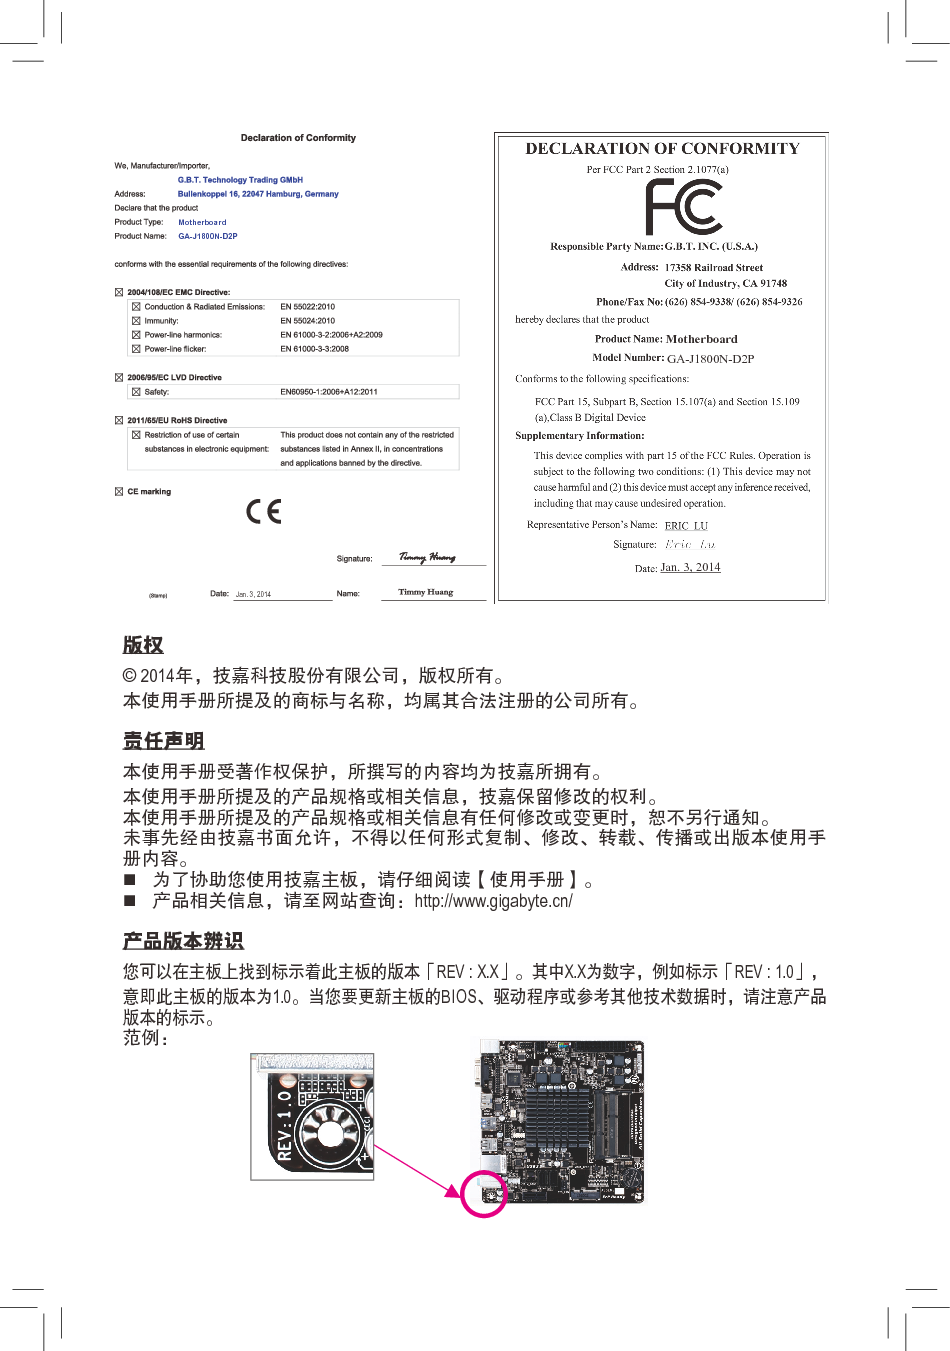 技嘉 Gigabyte GA-J1800N-D2P 使用手册 第1页